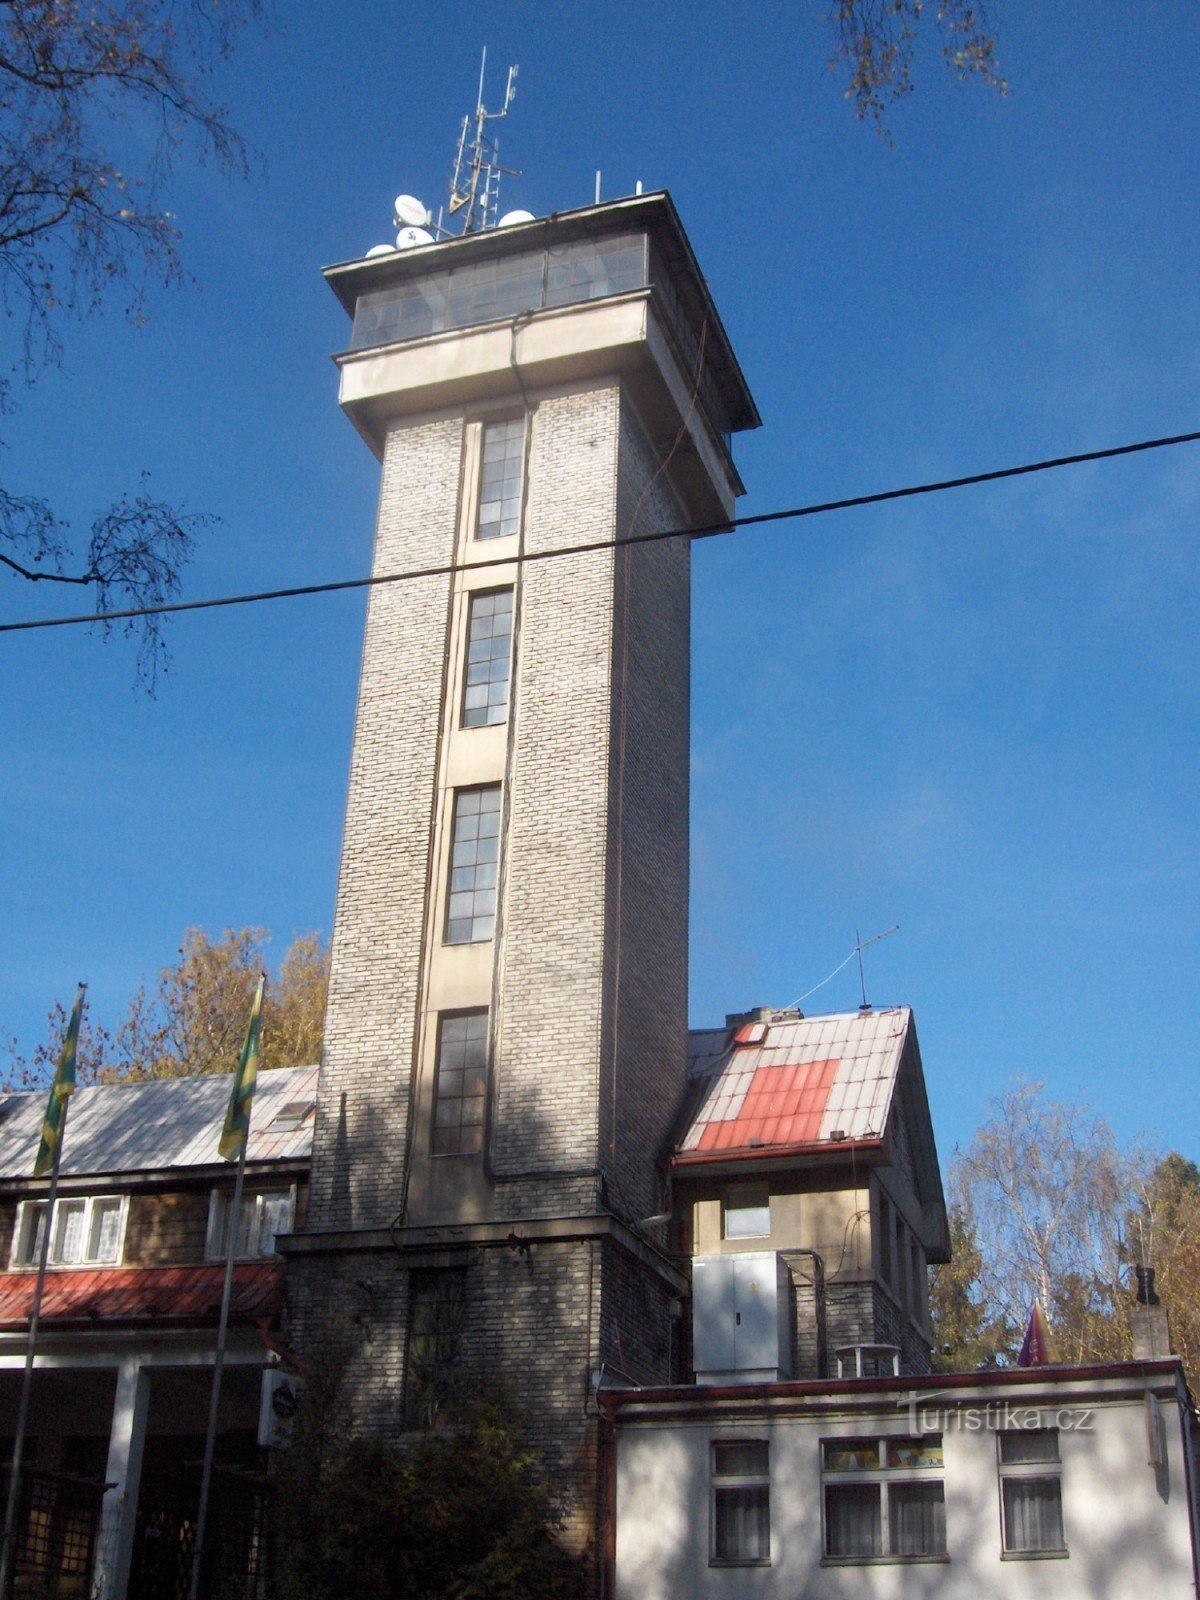 Kožova hora udsigtstårn